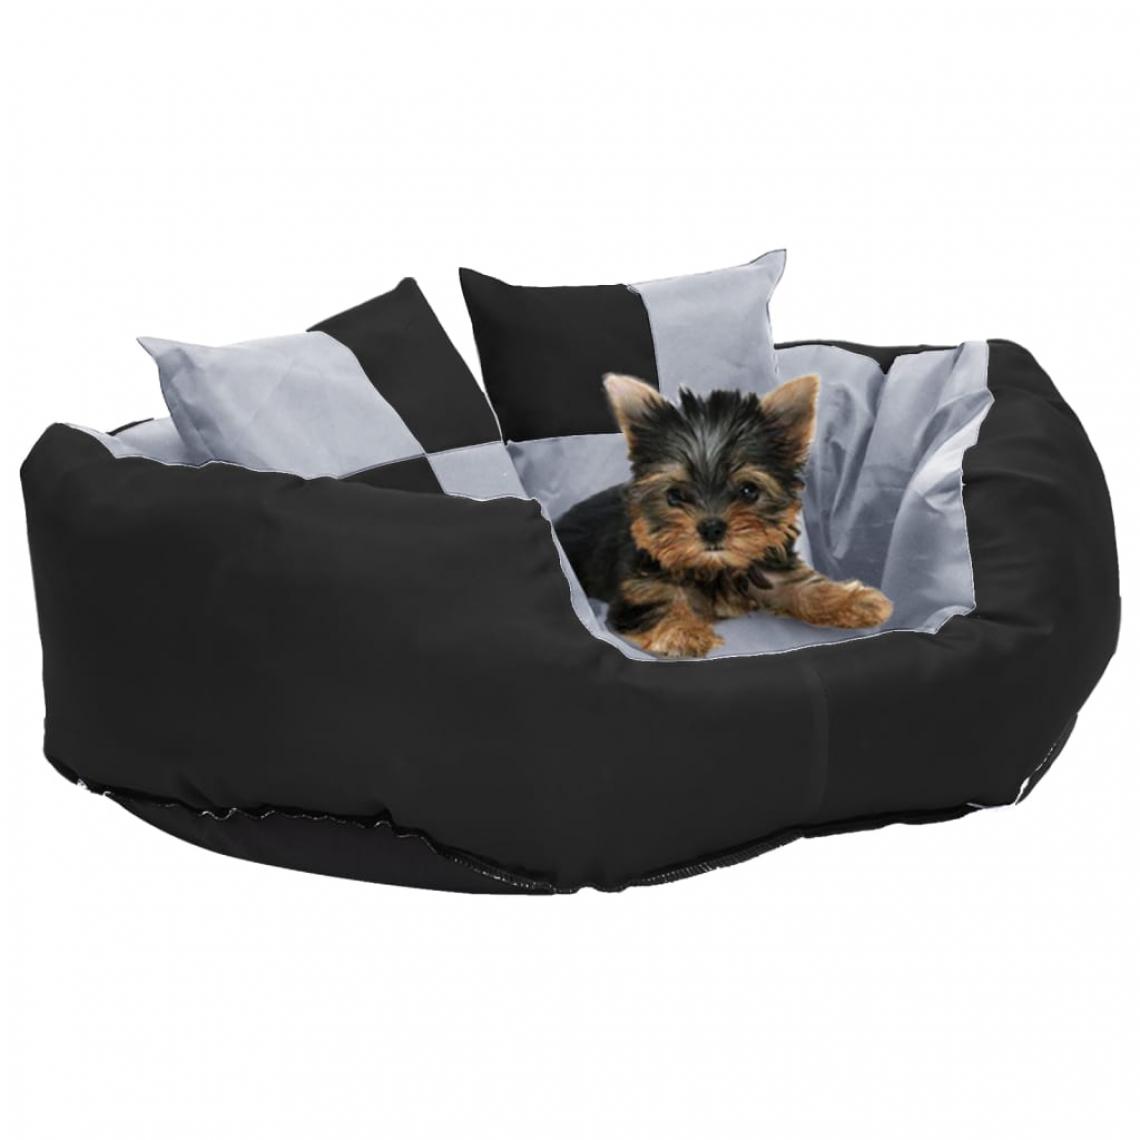 Vidaxl - vidaXL Coussin réversible lavable pour chien Gris et noir 65x50x20 cm - Corbeille pour chien